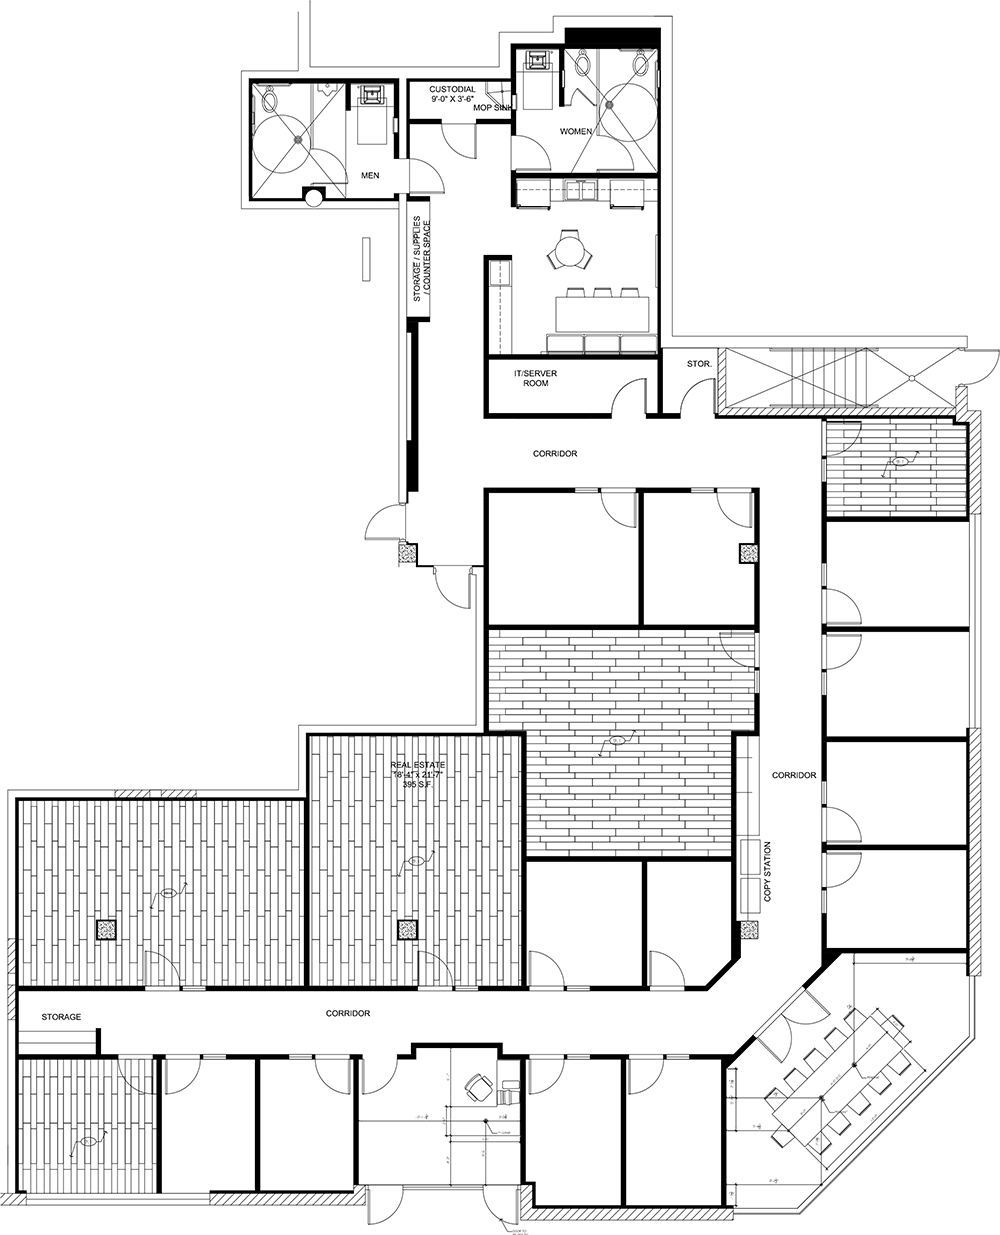 Space Planning | Studio 9 Interior Design